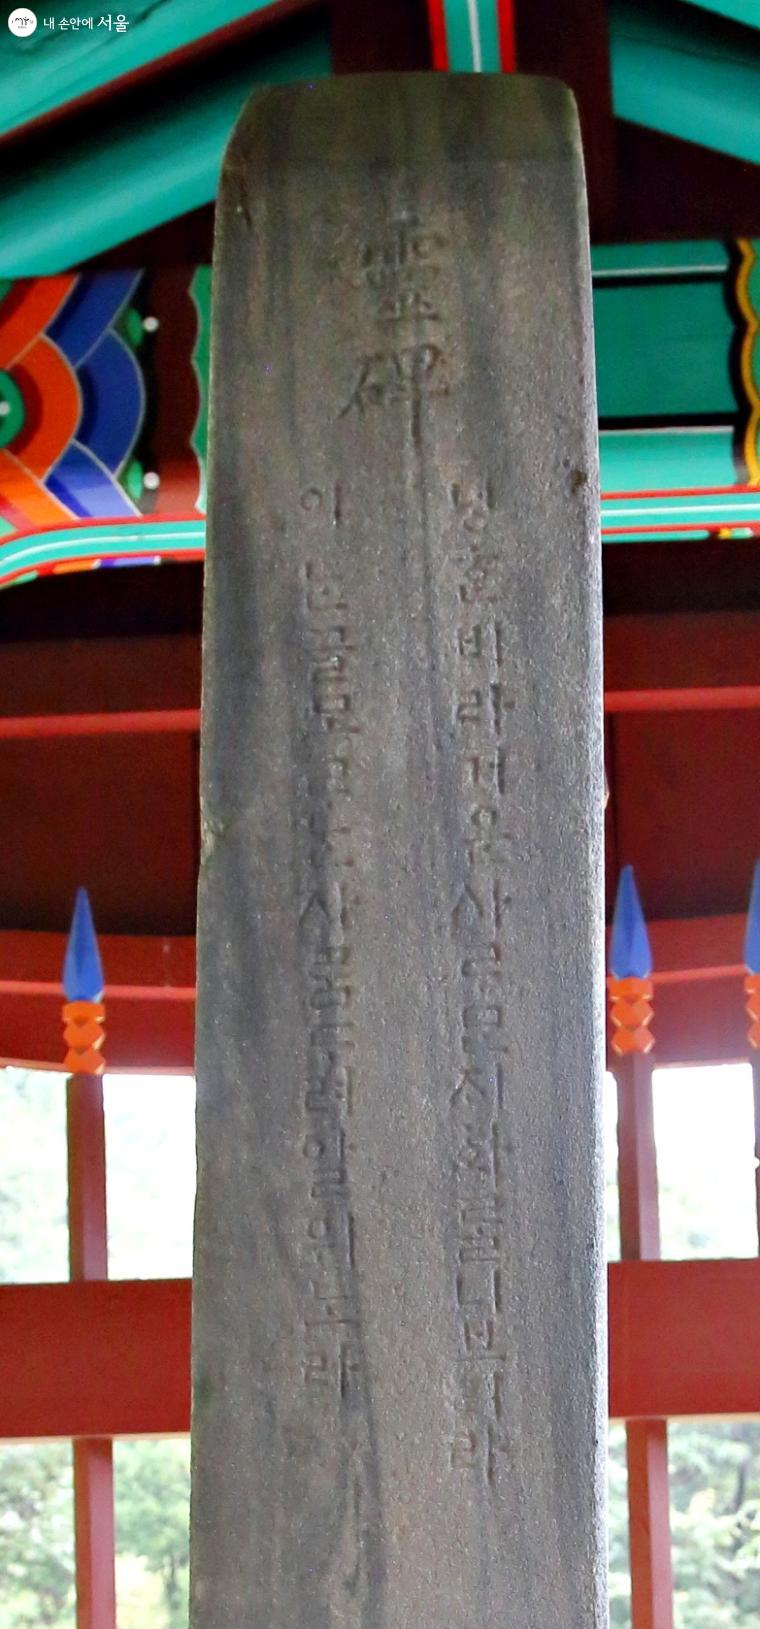 묘비 한 면에 옛 한글로 경고문이 새겨져 있다. 